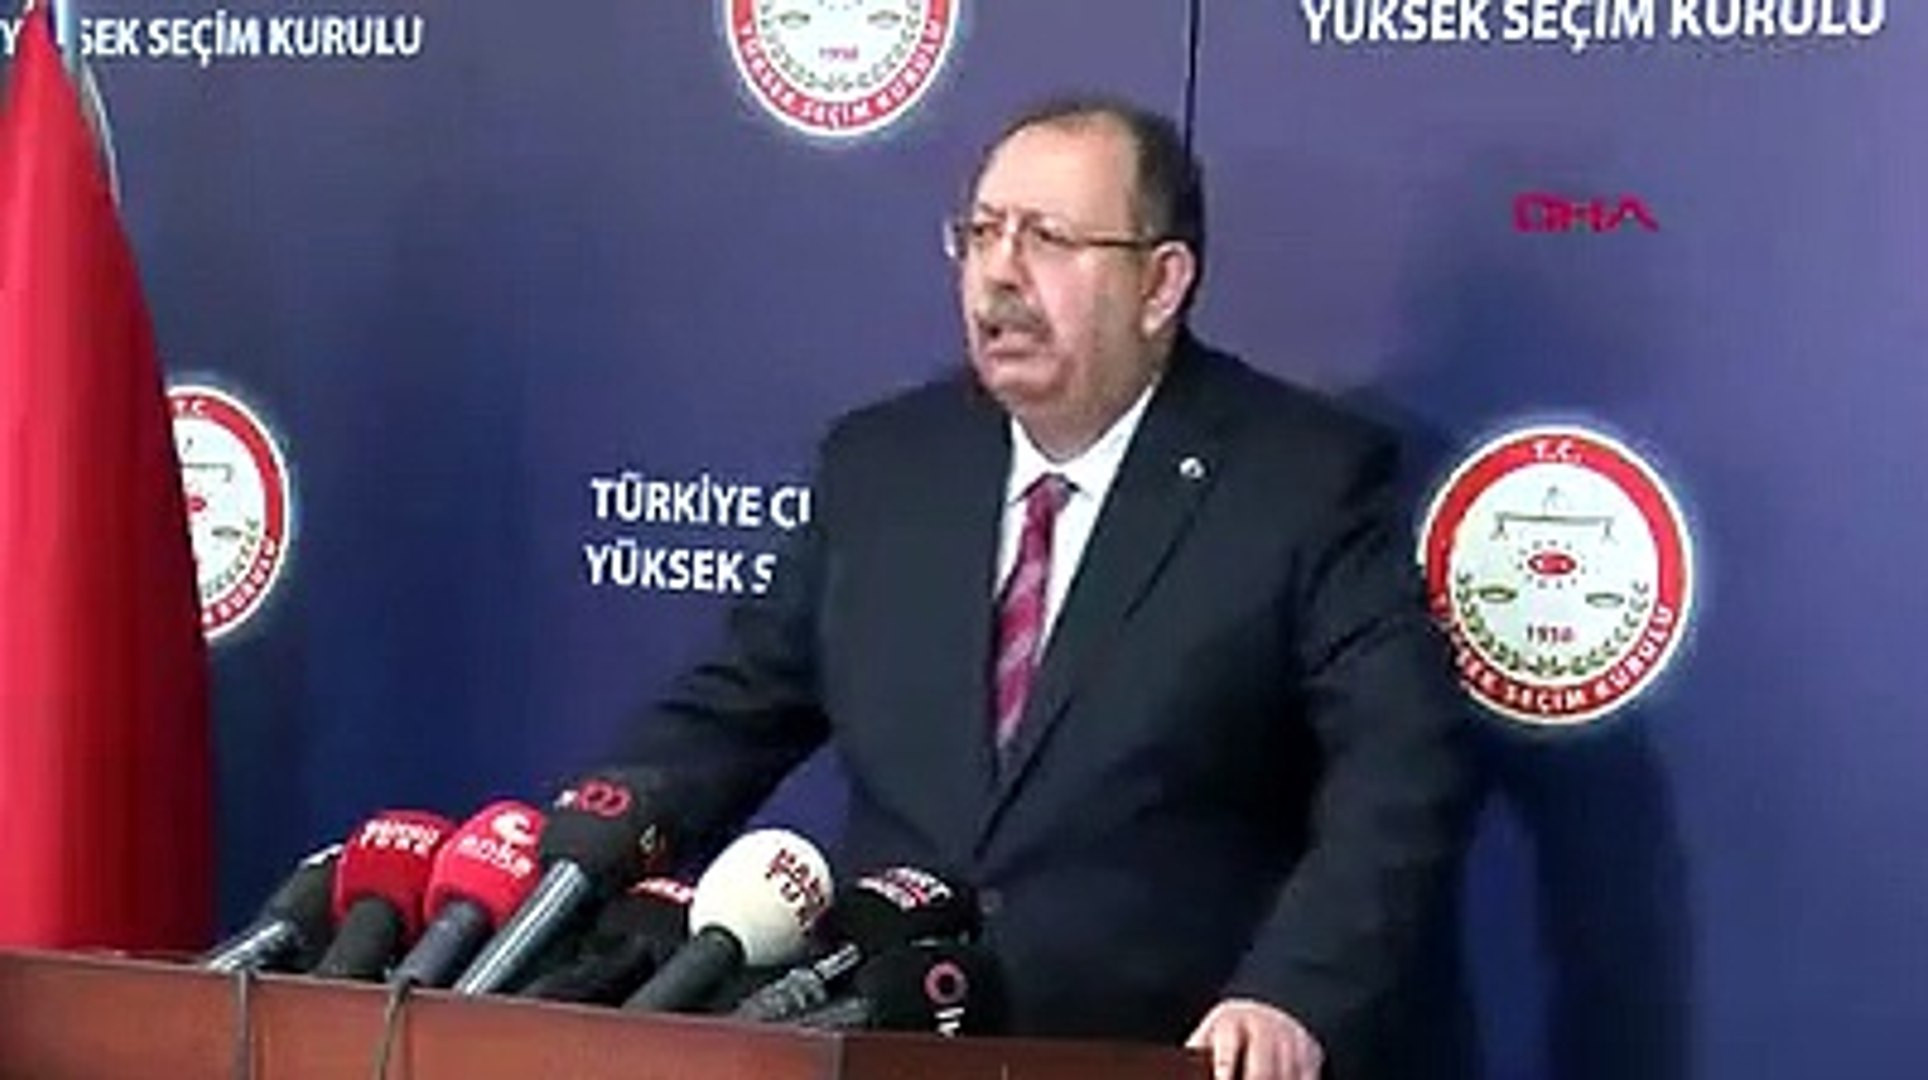 YSK, Erdoğan'ın adaylığı için kararını verdi